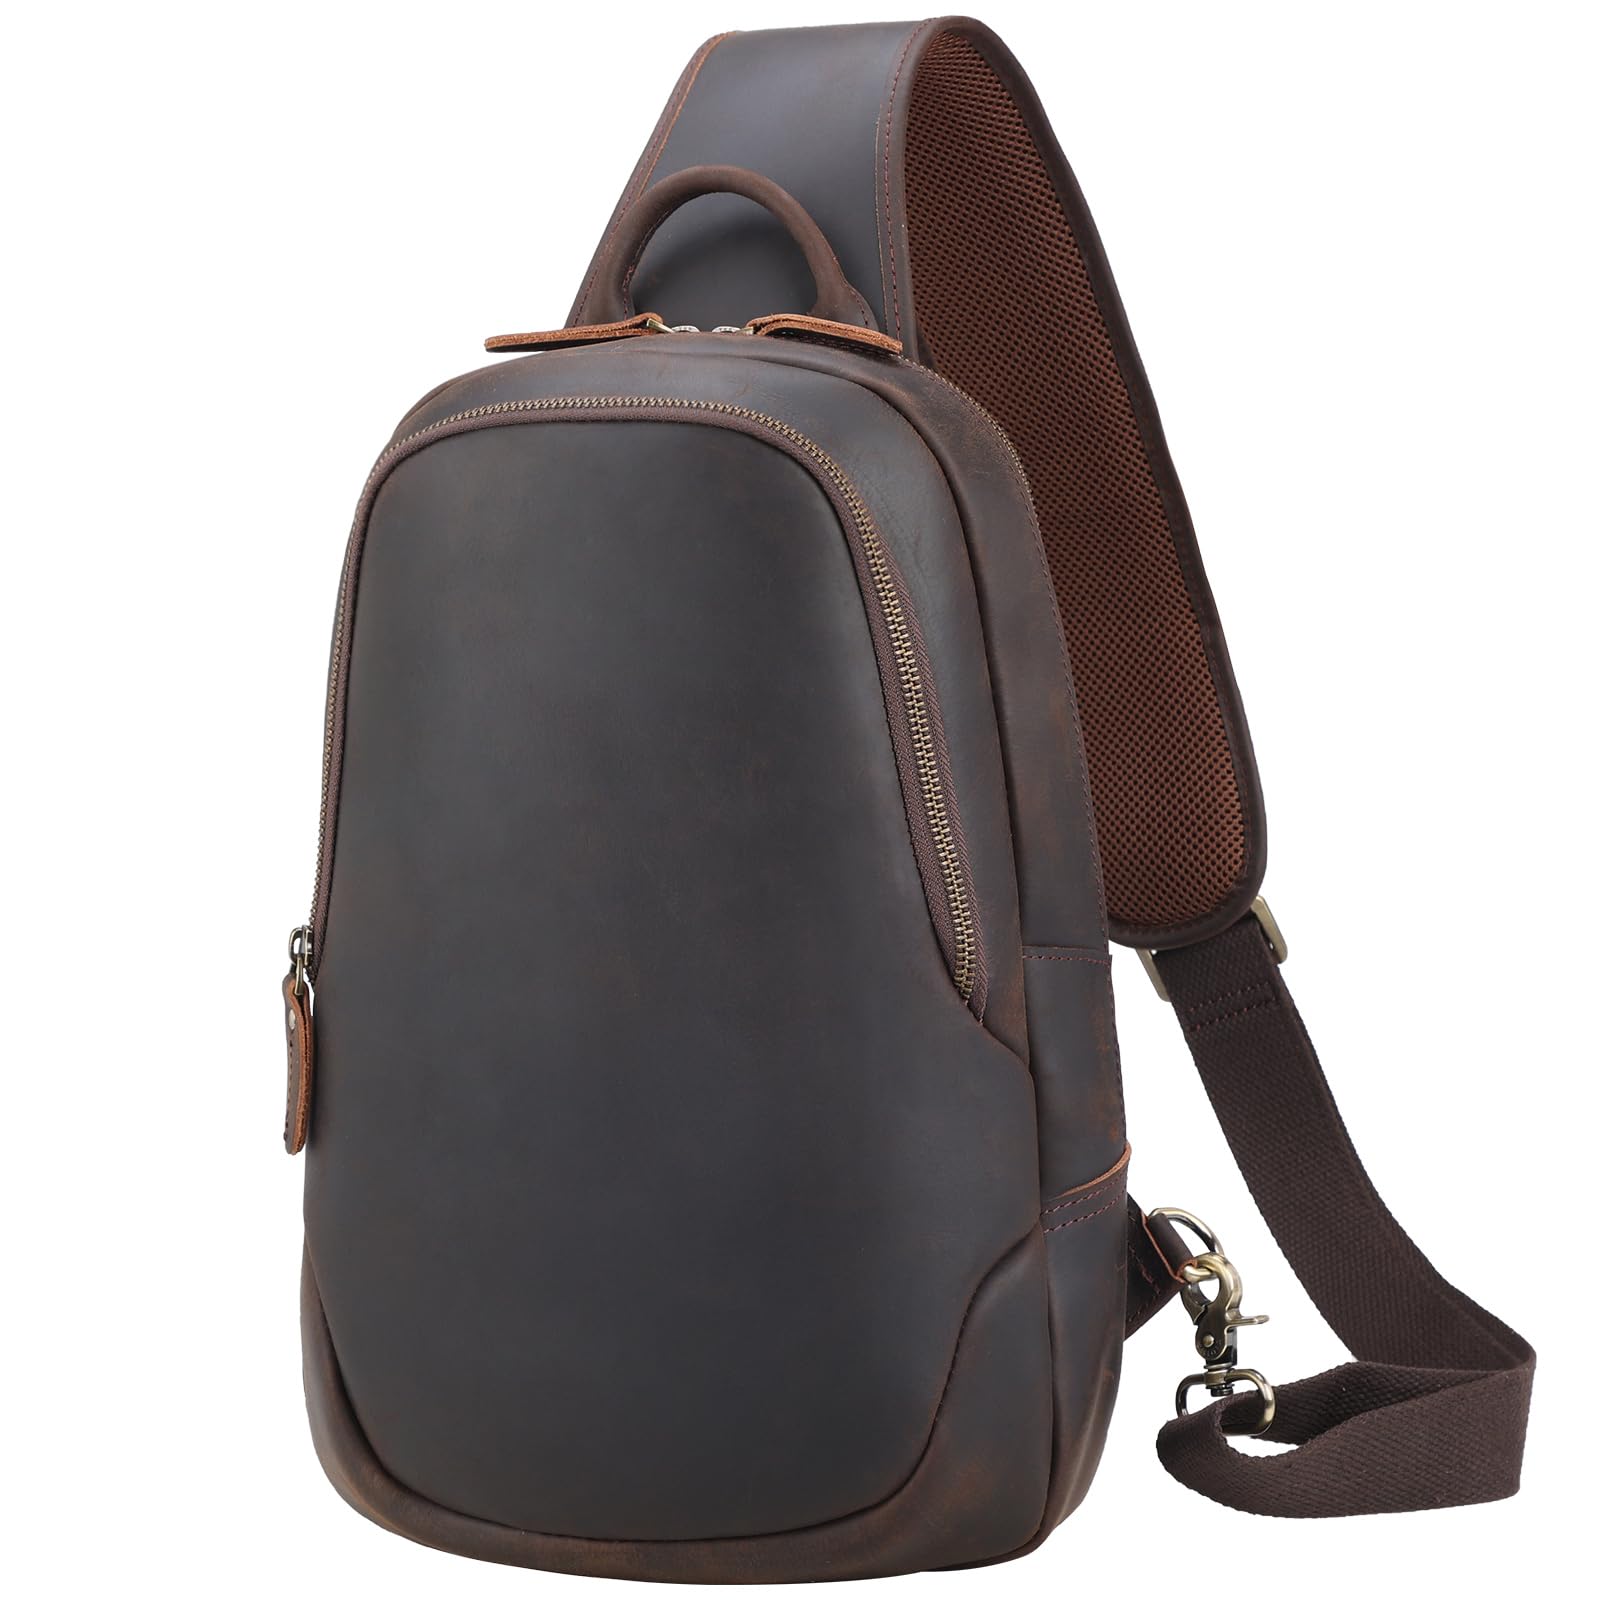 TIDING Mens Vintage Leather Crossbody Sling Bag Outdoor Travel Chest Bag Shoulder Daypack Fits 12.9 iPad